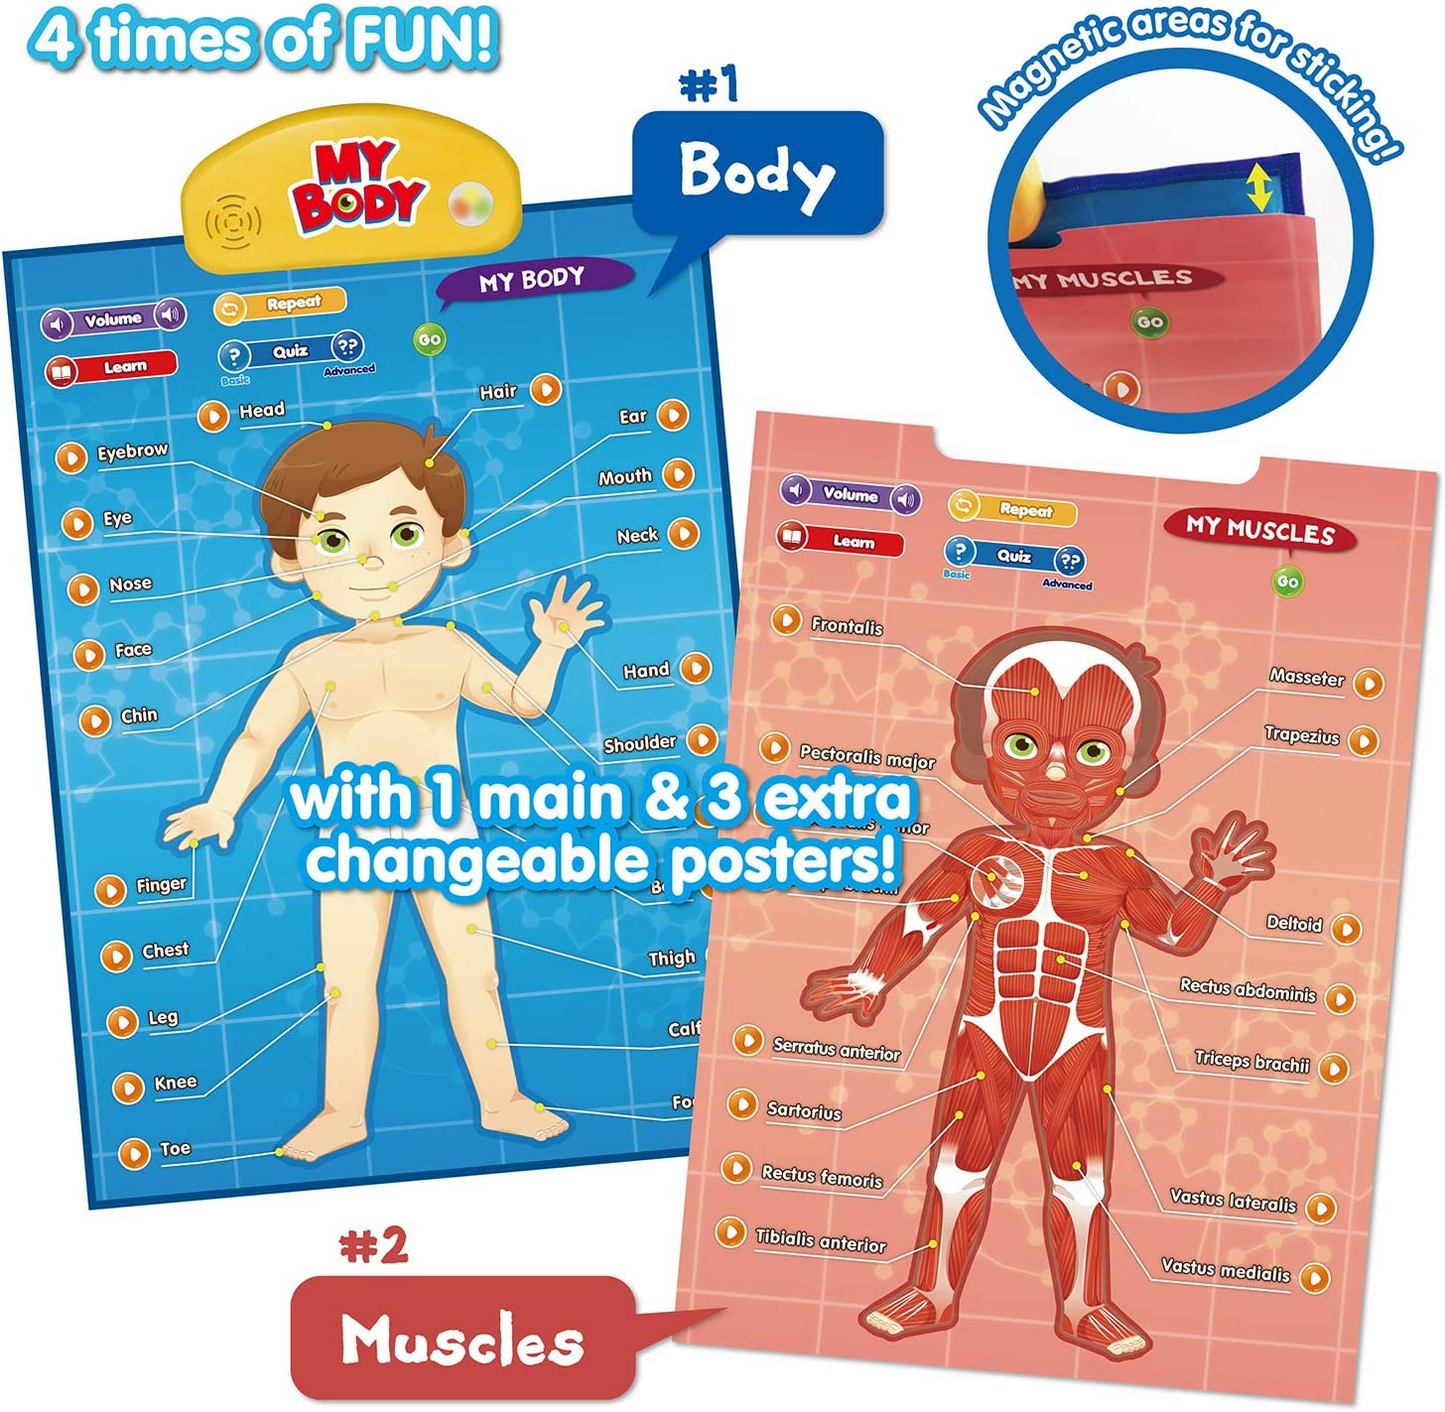 BEST LEARNING i-Poster My Body - Jogo Interativo Educacional de Anatomia Humana Falando Sistema de Brinquedo para Aprender Partes do Corpo, Órgãos, Músculos e Ossos para Crianças de 5 a 12 Anos